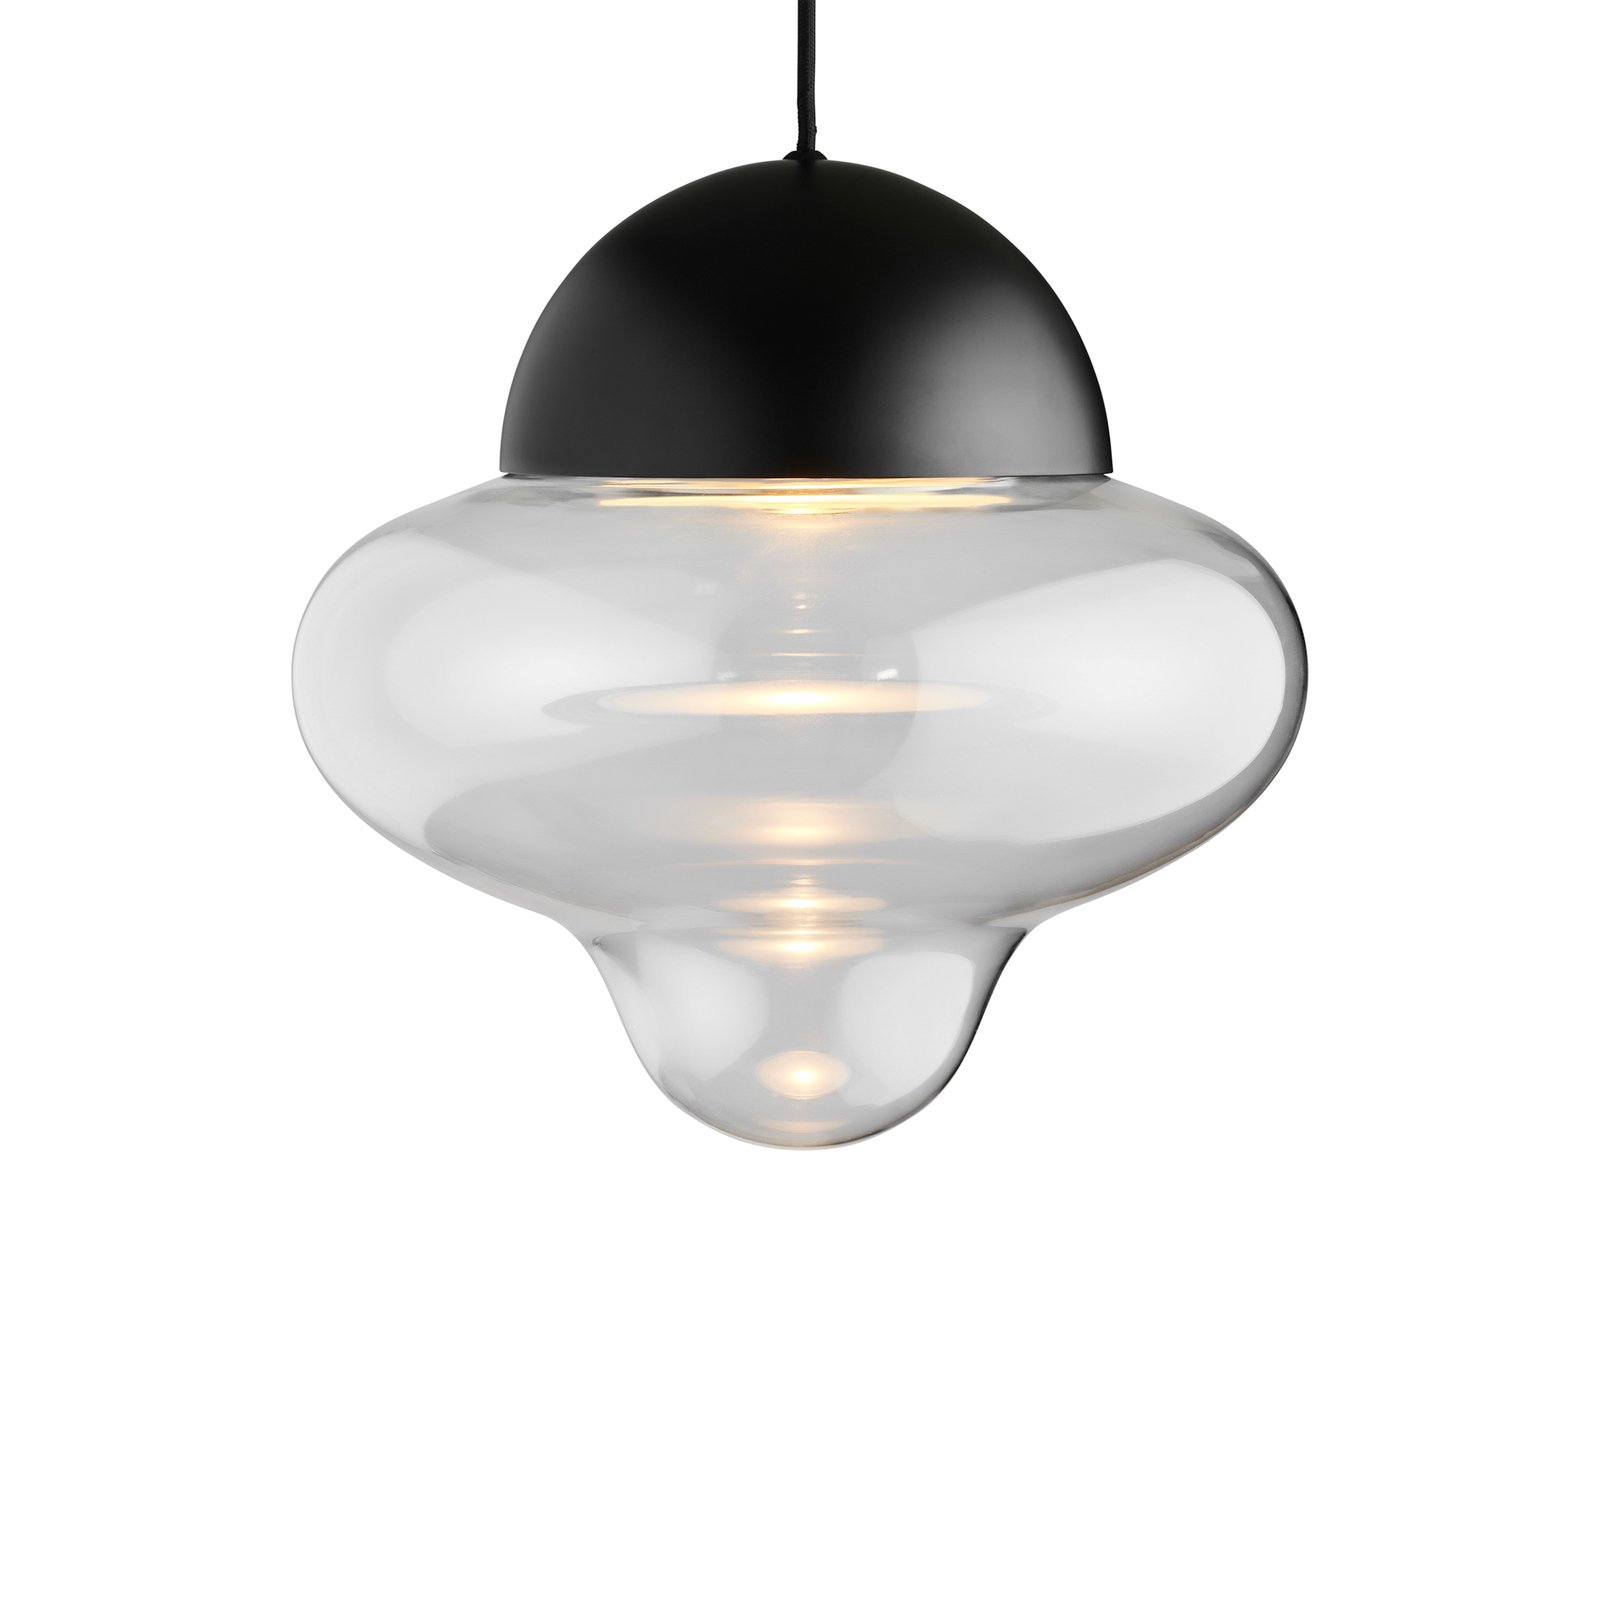 LED-Hängeleuchte Nutty XL, klar / schwarz, Ø 30 cm, Glas